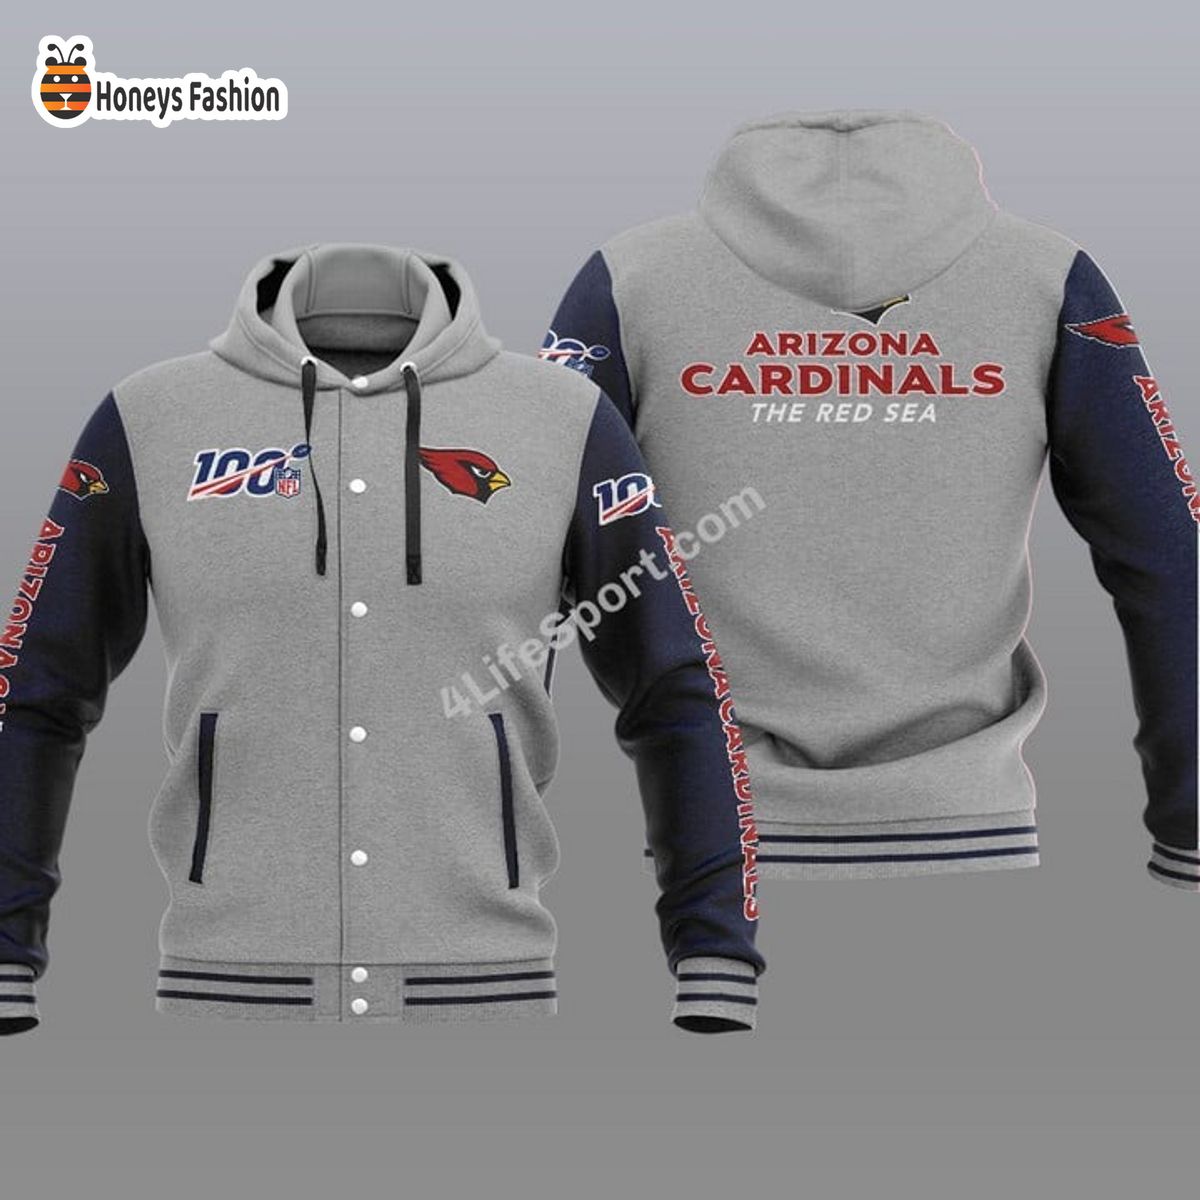 Arizona Cardinals 100th Anniversary Season Hooded Varsity Jacket